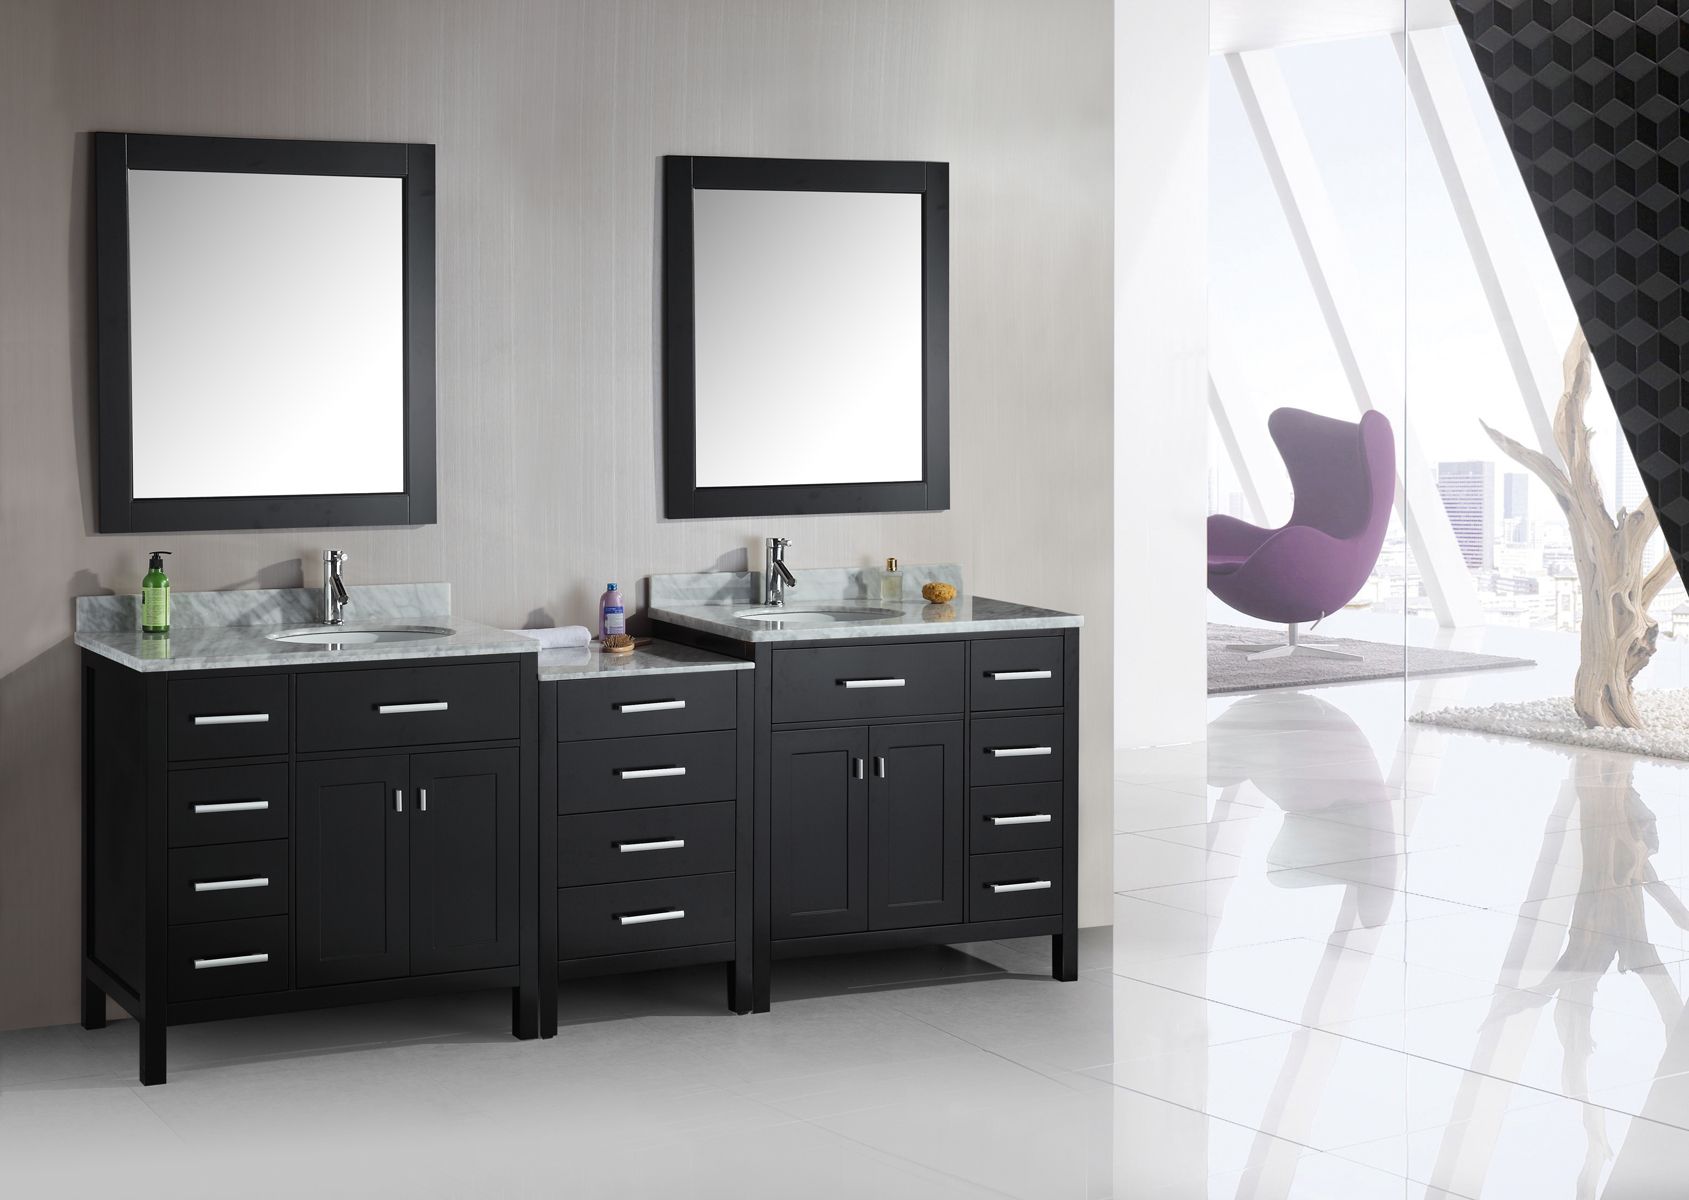 Dazzling IKEA Bathroom Vanity Ideas Designs